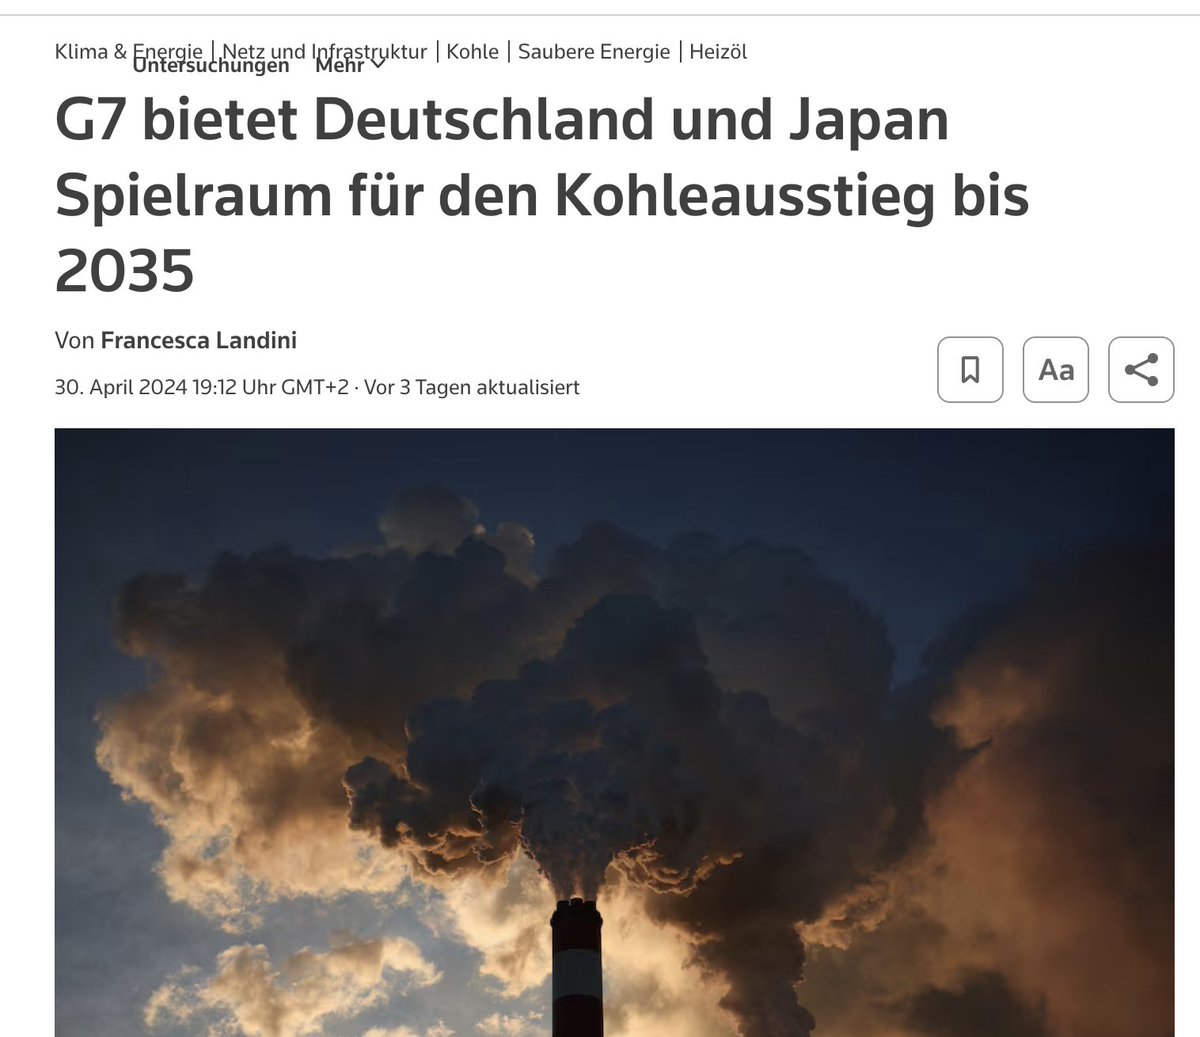 Kohleminister
#Habeck s Worte stehen im Widerspruch zu den Taten der Regierung, die um den Weiterbetrieb der Kohlekraftwerke betteln muss. Japan hat gelernt und reaktiviert leider viel zu spät seine Atomkraftwerke. Habeck steht derweil international blamiert da.…